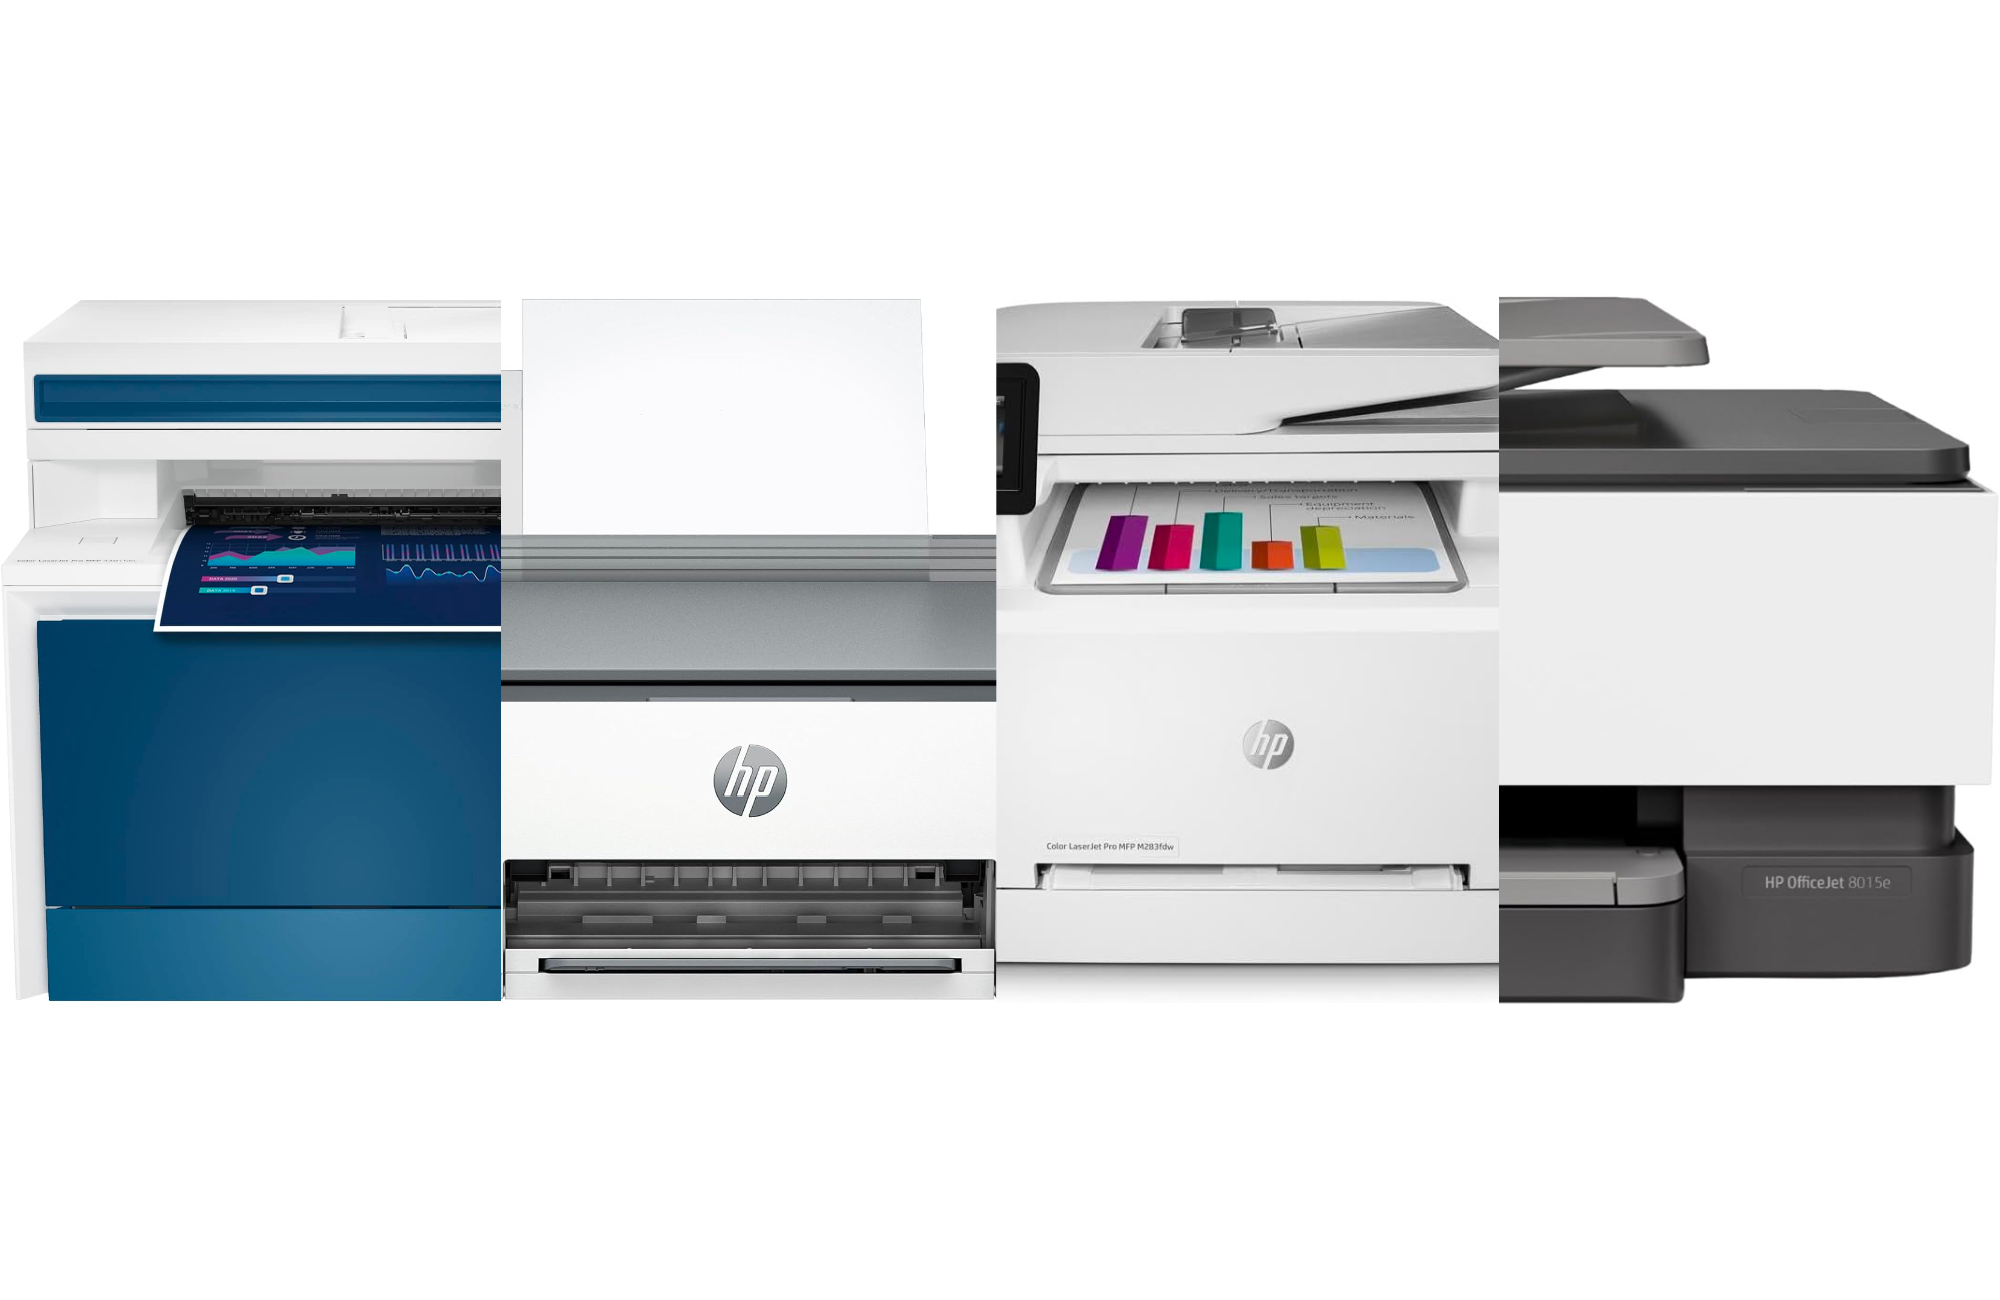 https://www.popsci.com/uploads/2023/12/21/The-Best-HP-Printers-2.jpg?auto=webp&width=1440&height=936